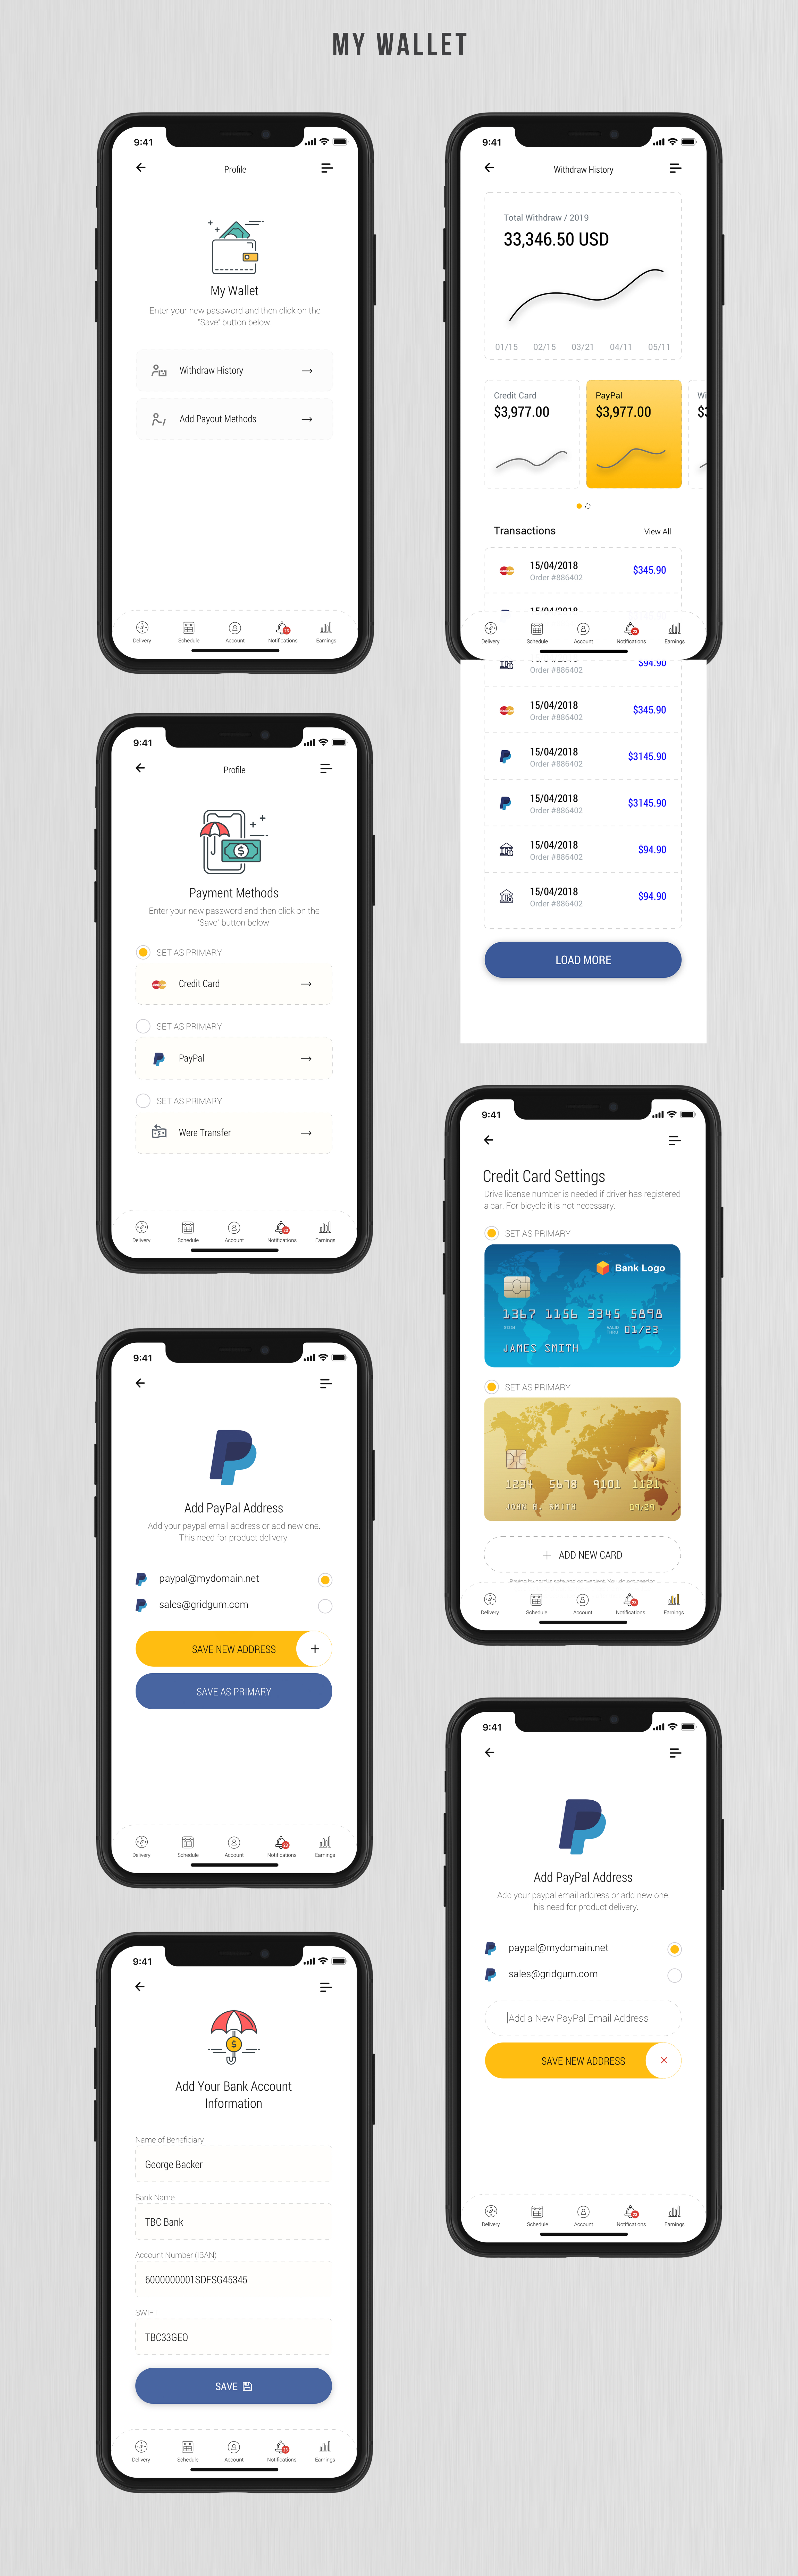 Dobule - Food Delivery UI Kit for Mobile App - 20